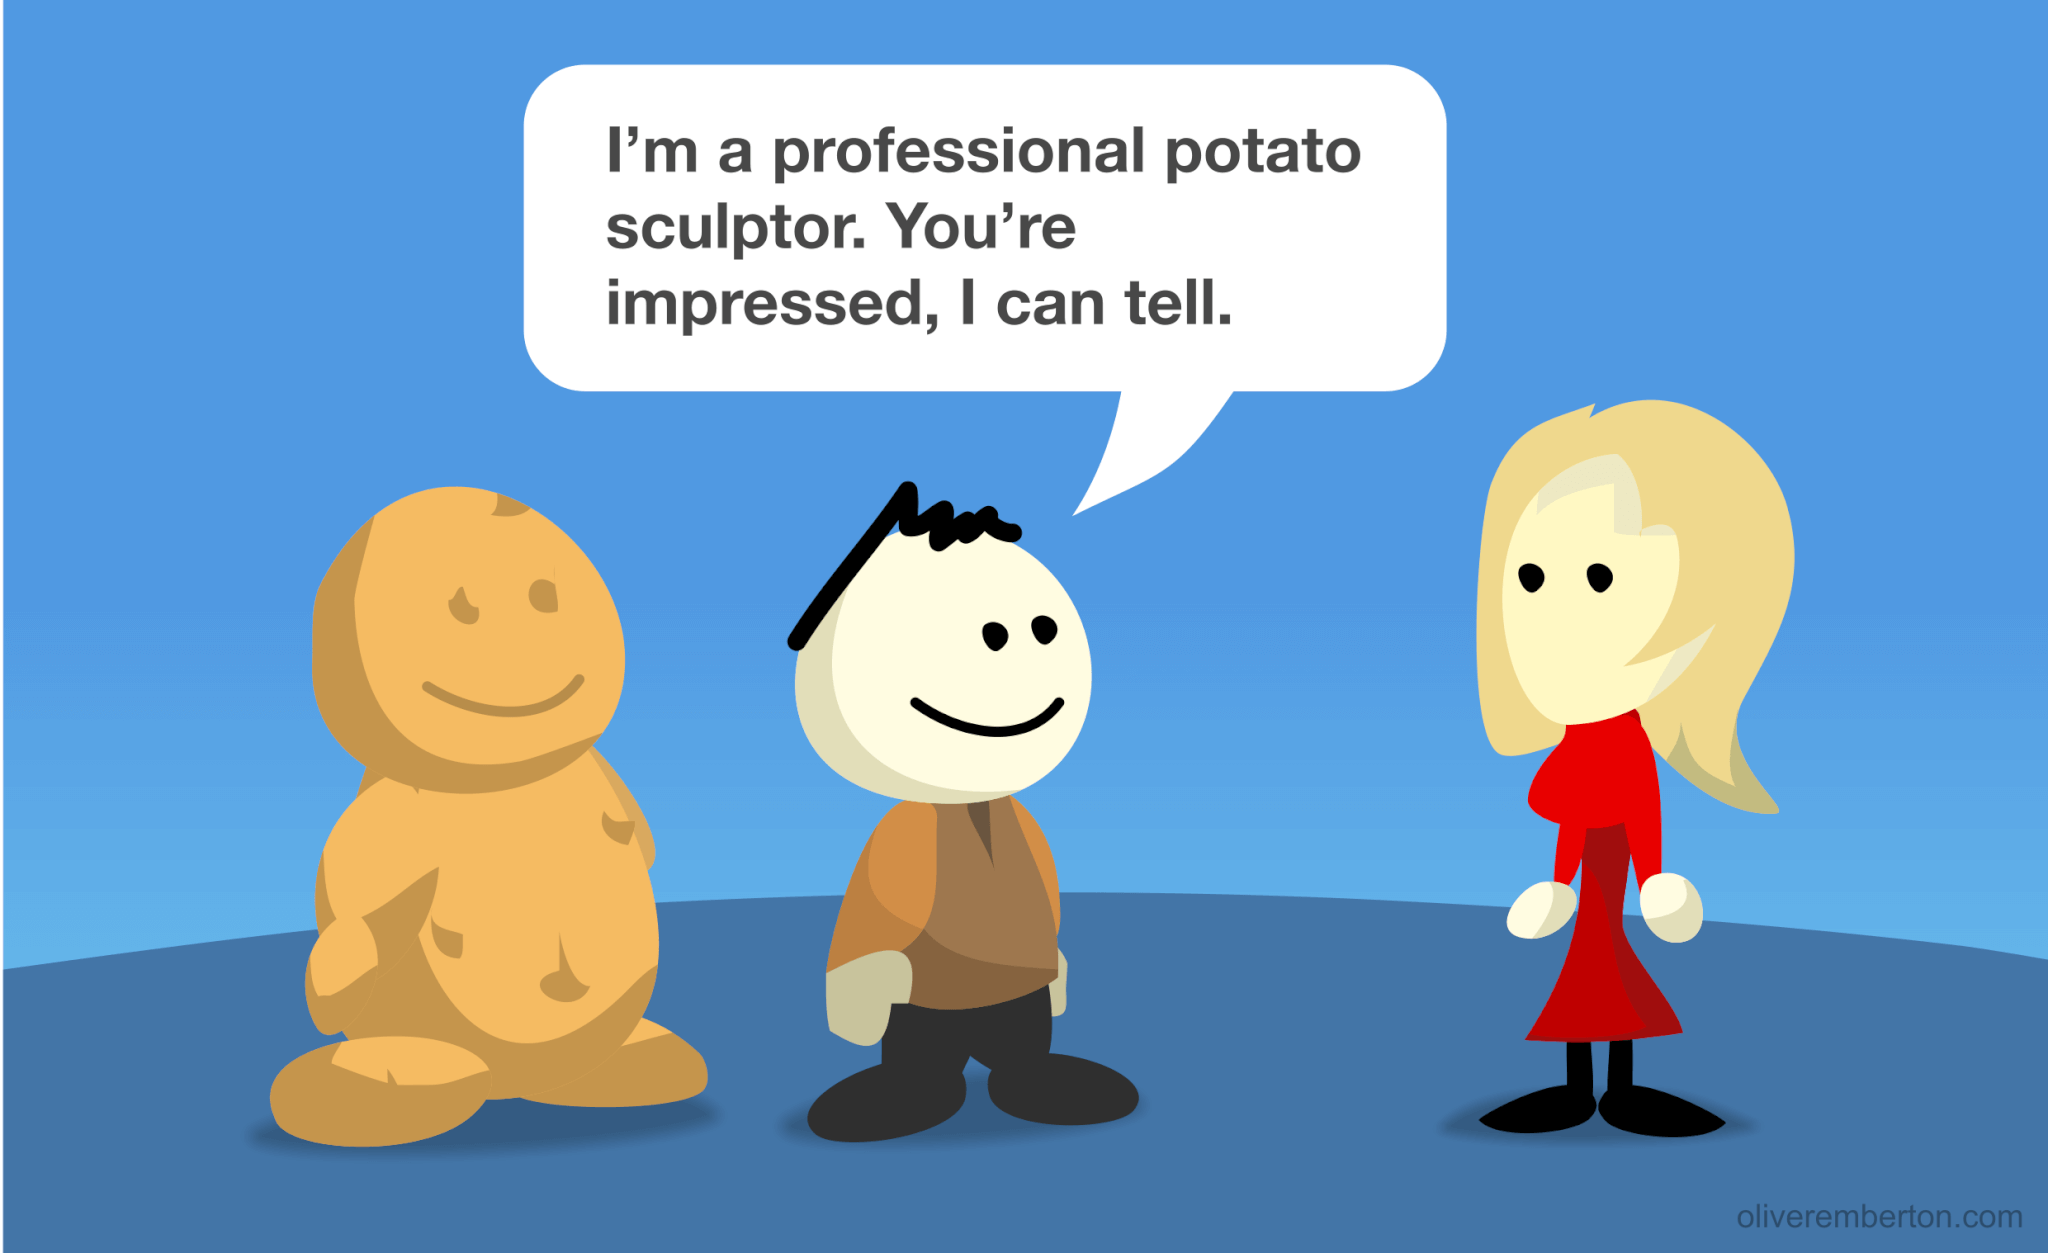 What Do You Do? Potato sculptor